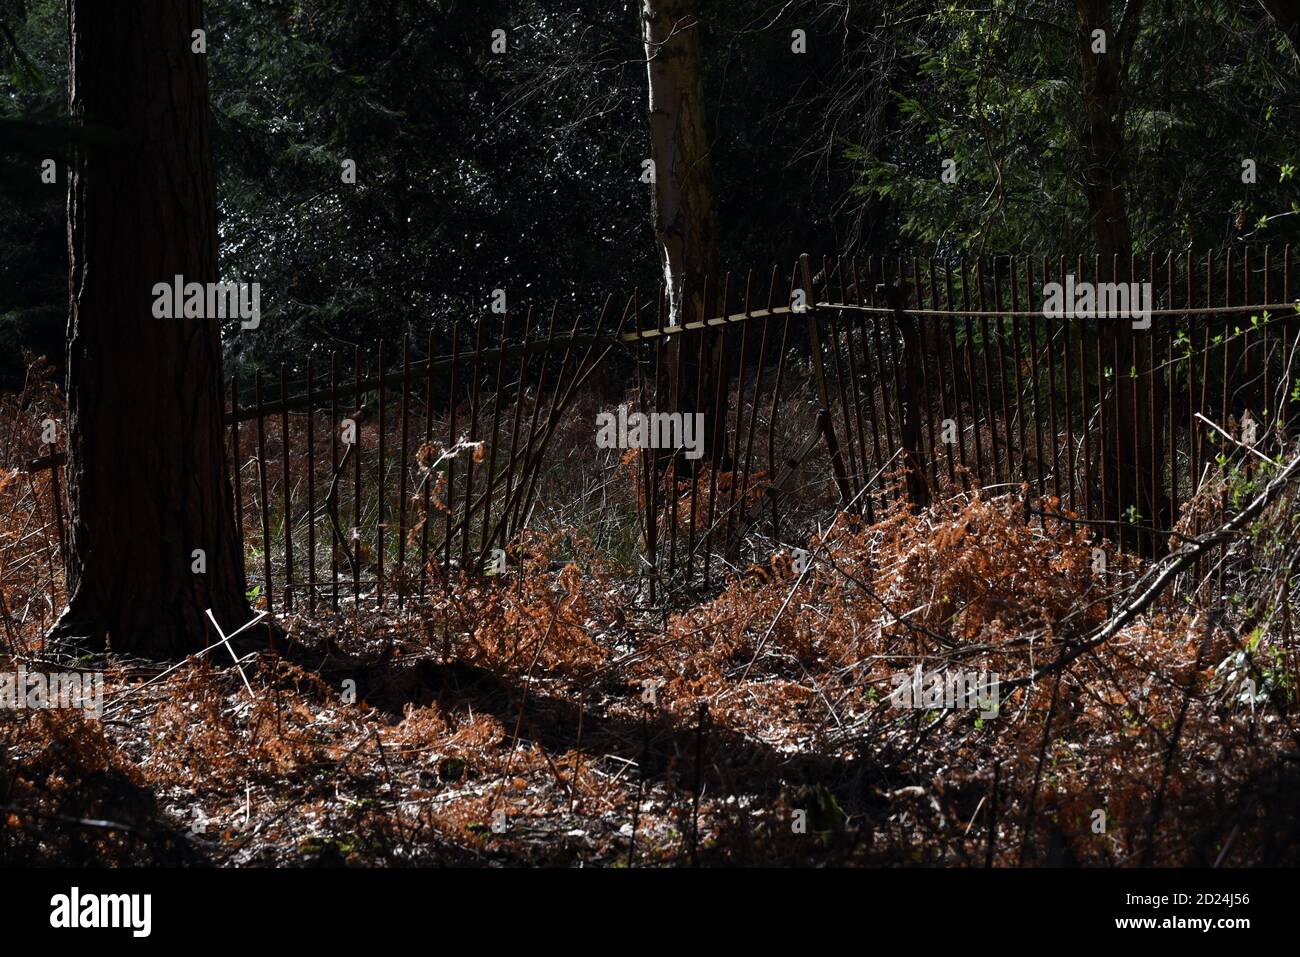 Une ancienne clôture métallique brisée au milieu d'un forêt Banque D'Images